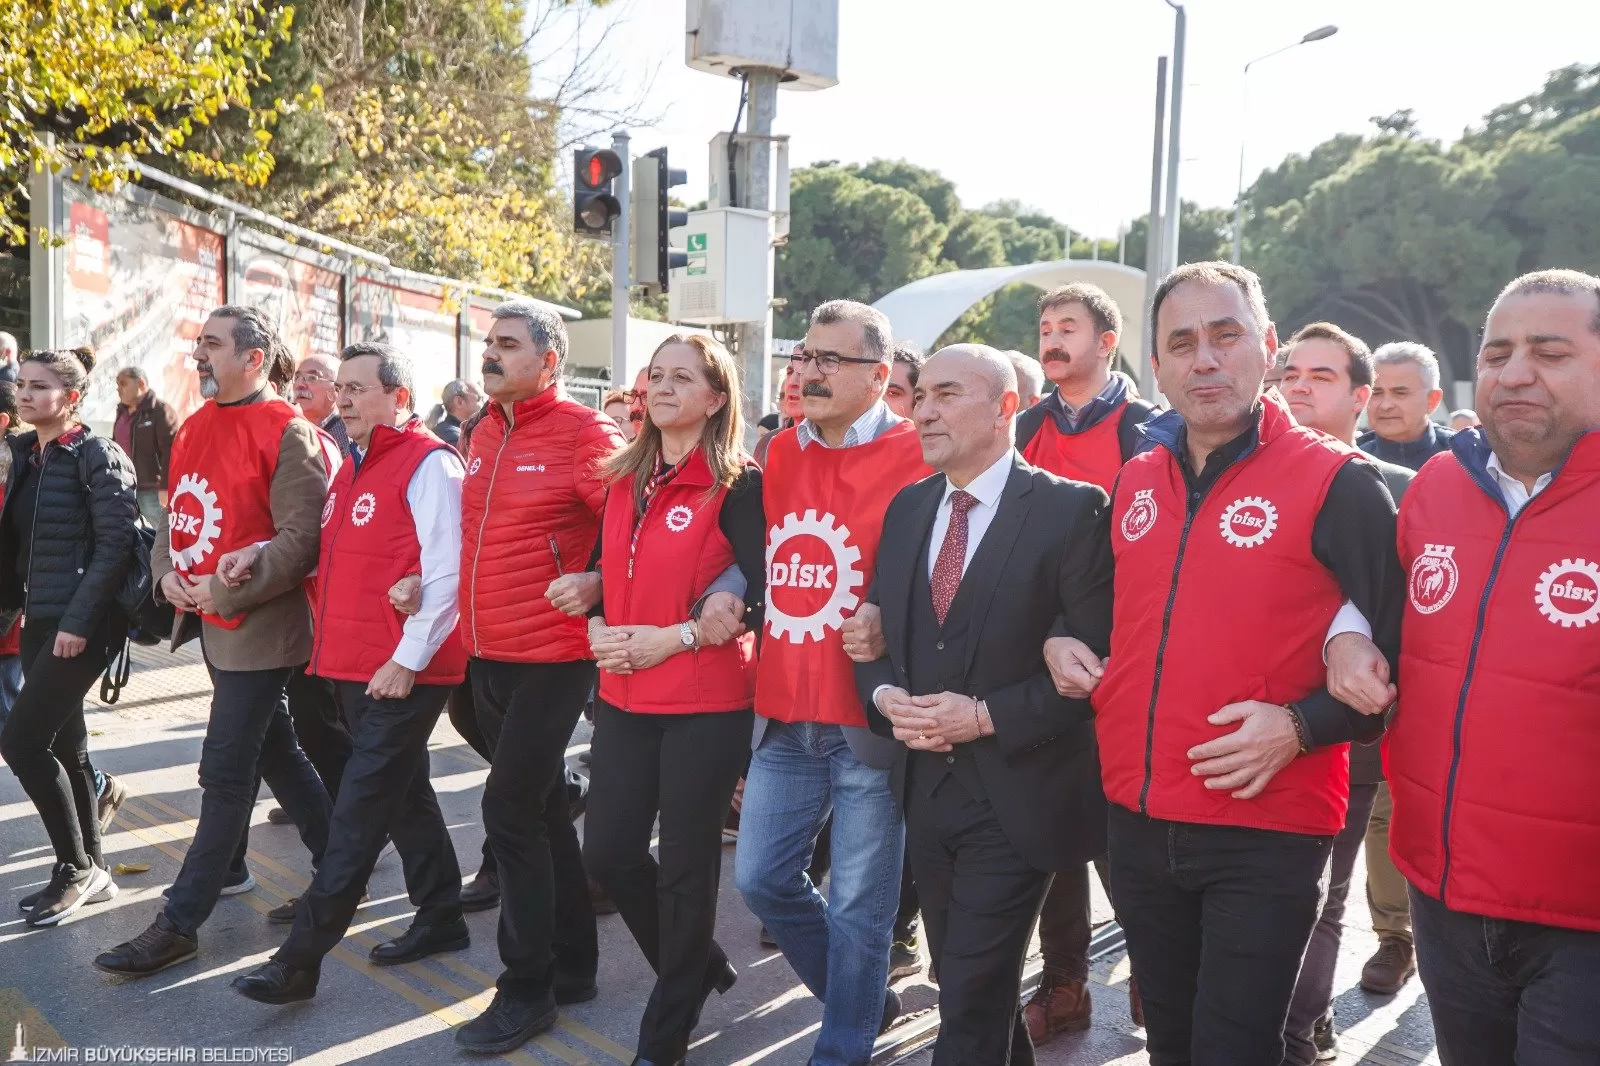 İzmir'de DİSK Genel İş Sendikası işçileri, vergide adalet ve asgari ücrete yönelik taleplerini dile getirmek için yürüyüş düzenledi.